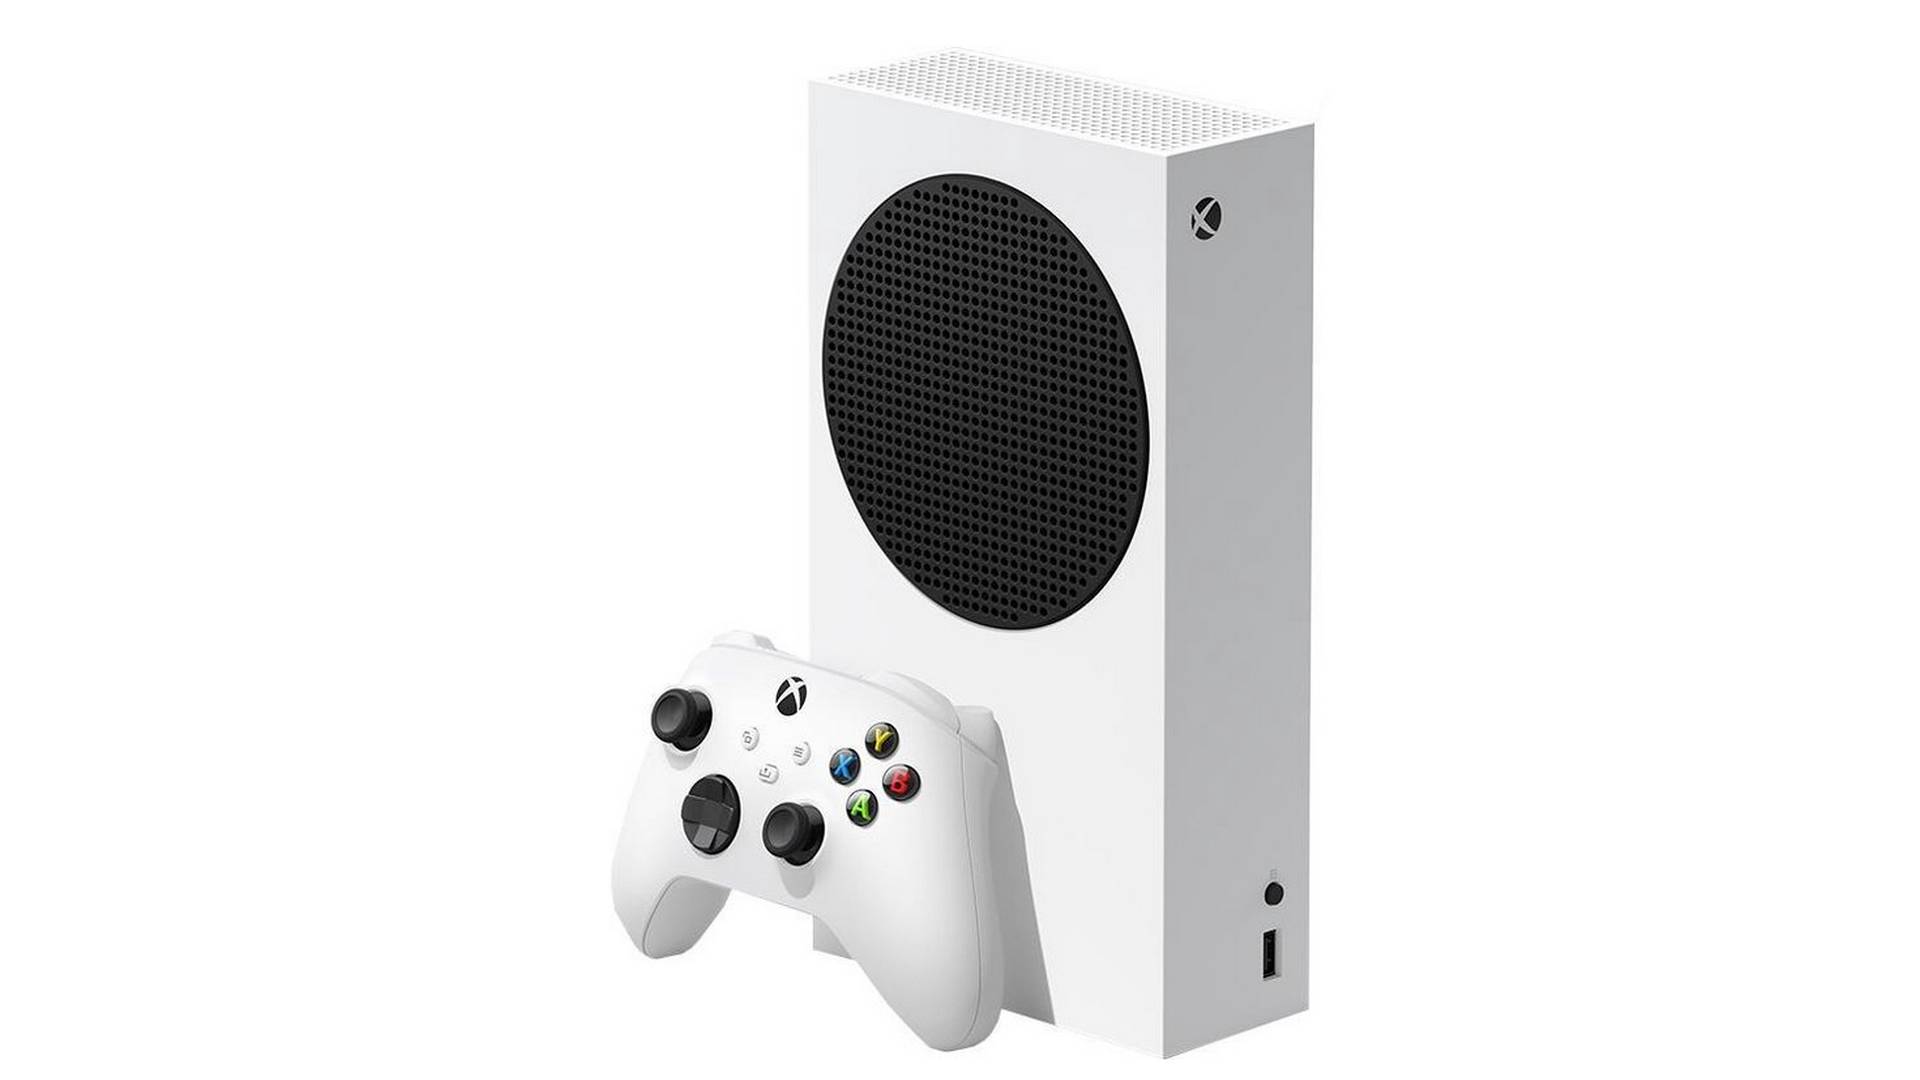 Holt euch die Xbox Series S für 222 Euro am Black Friday - Und auch Controller gibt’s günstiger.